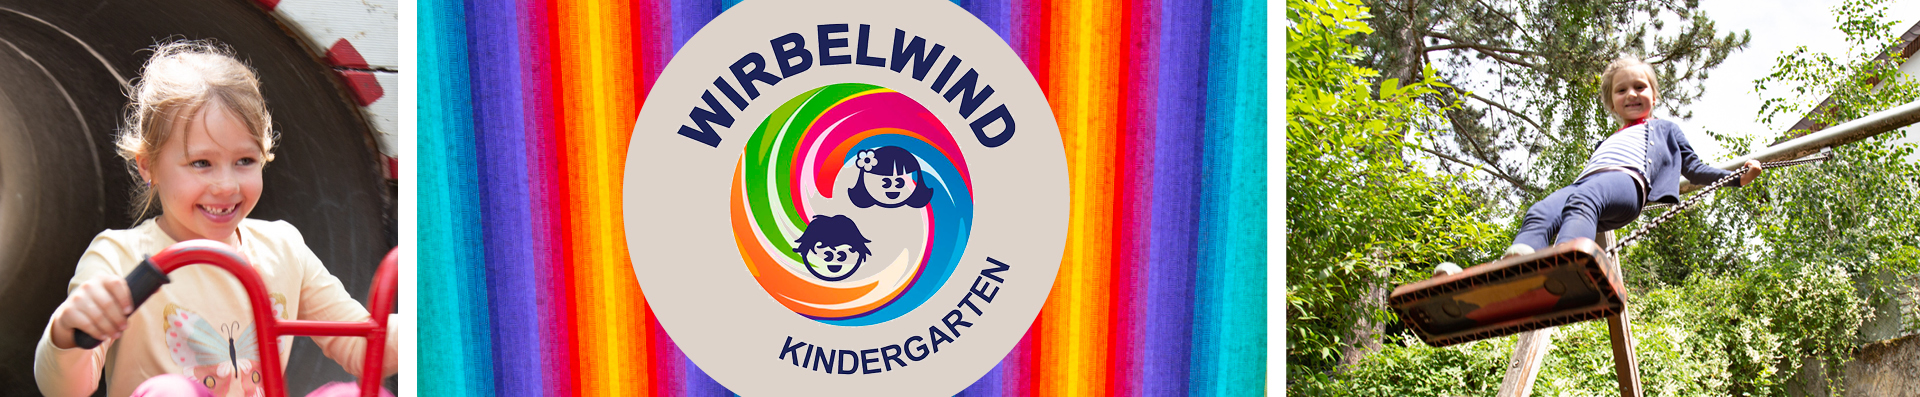 Kindergarten Wirbelwind